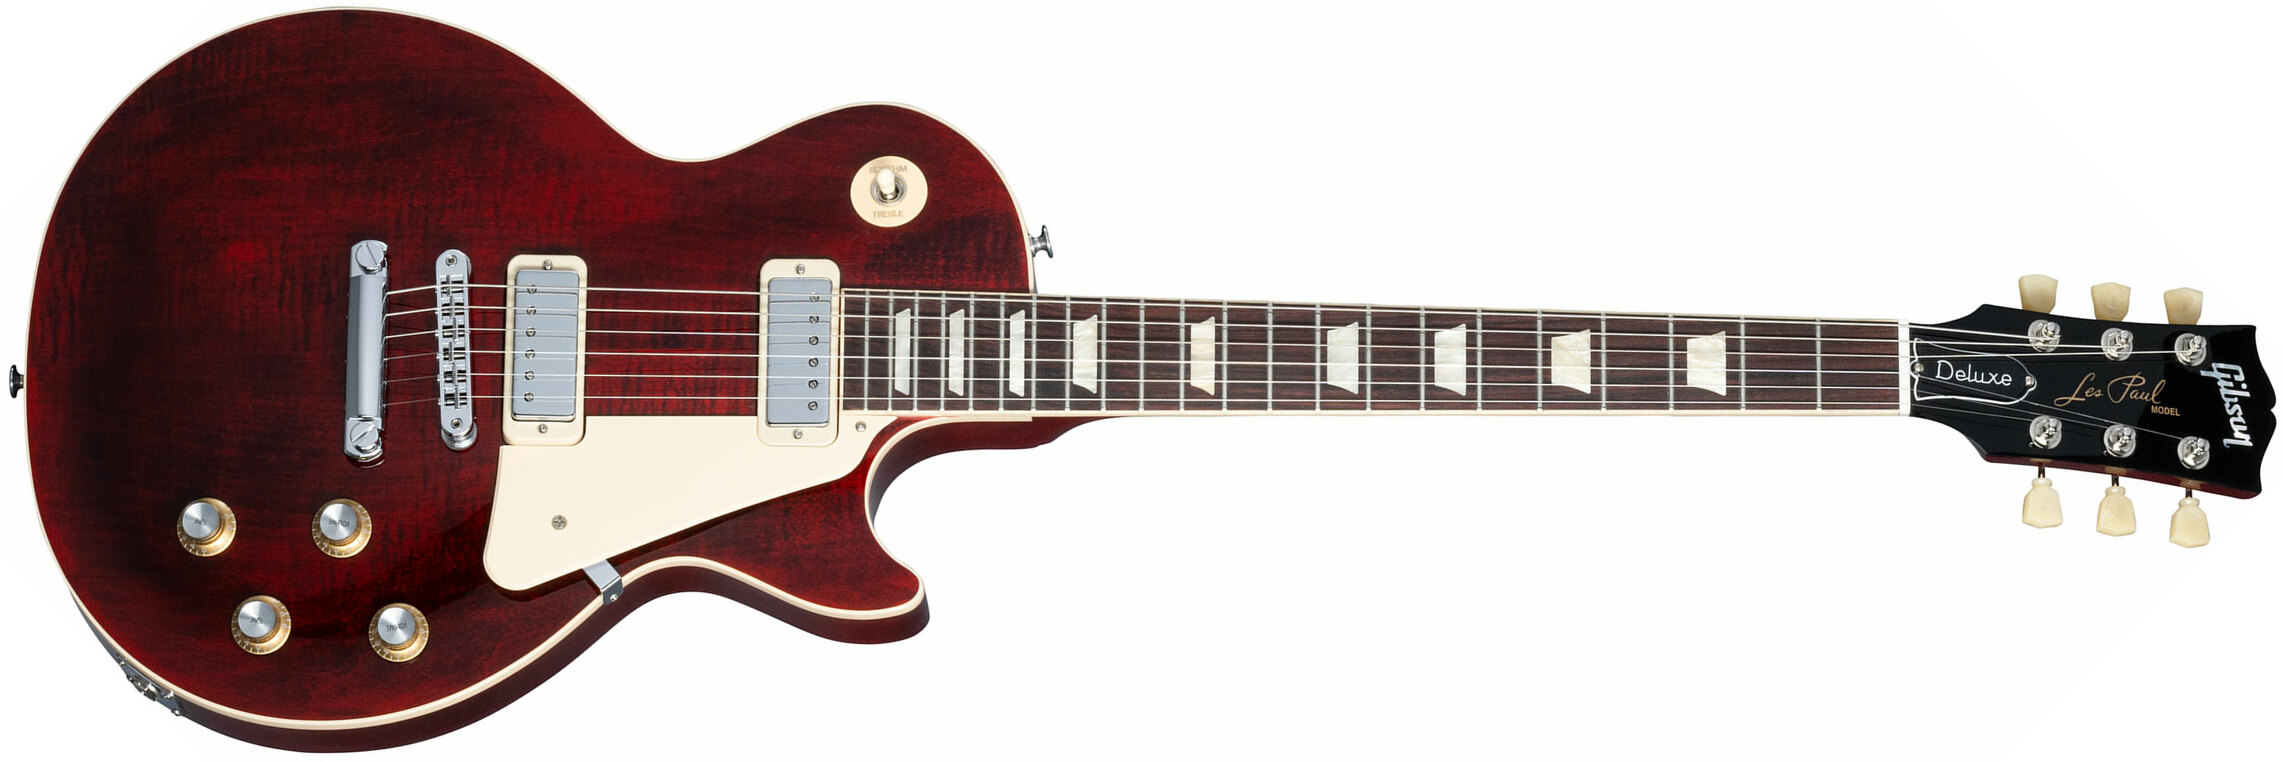 Gibson Les Paul Deluxe 70s Plain Top Original 2mh Ht Rw - Wine Red - Guitare Électrique Single Cut - Main picture